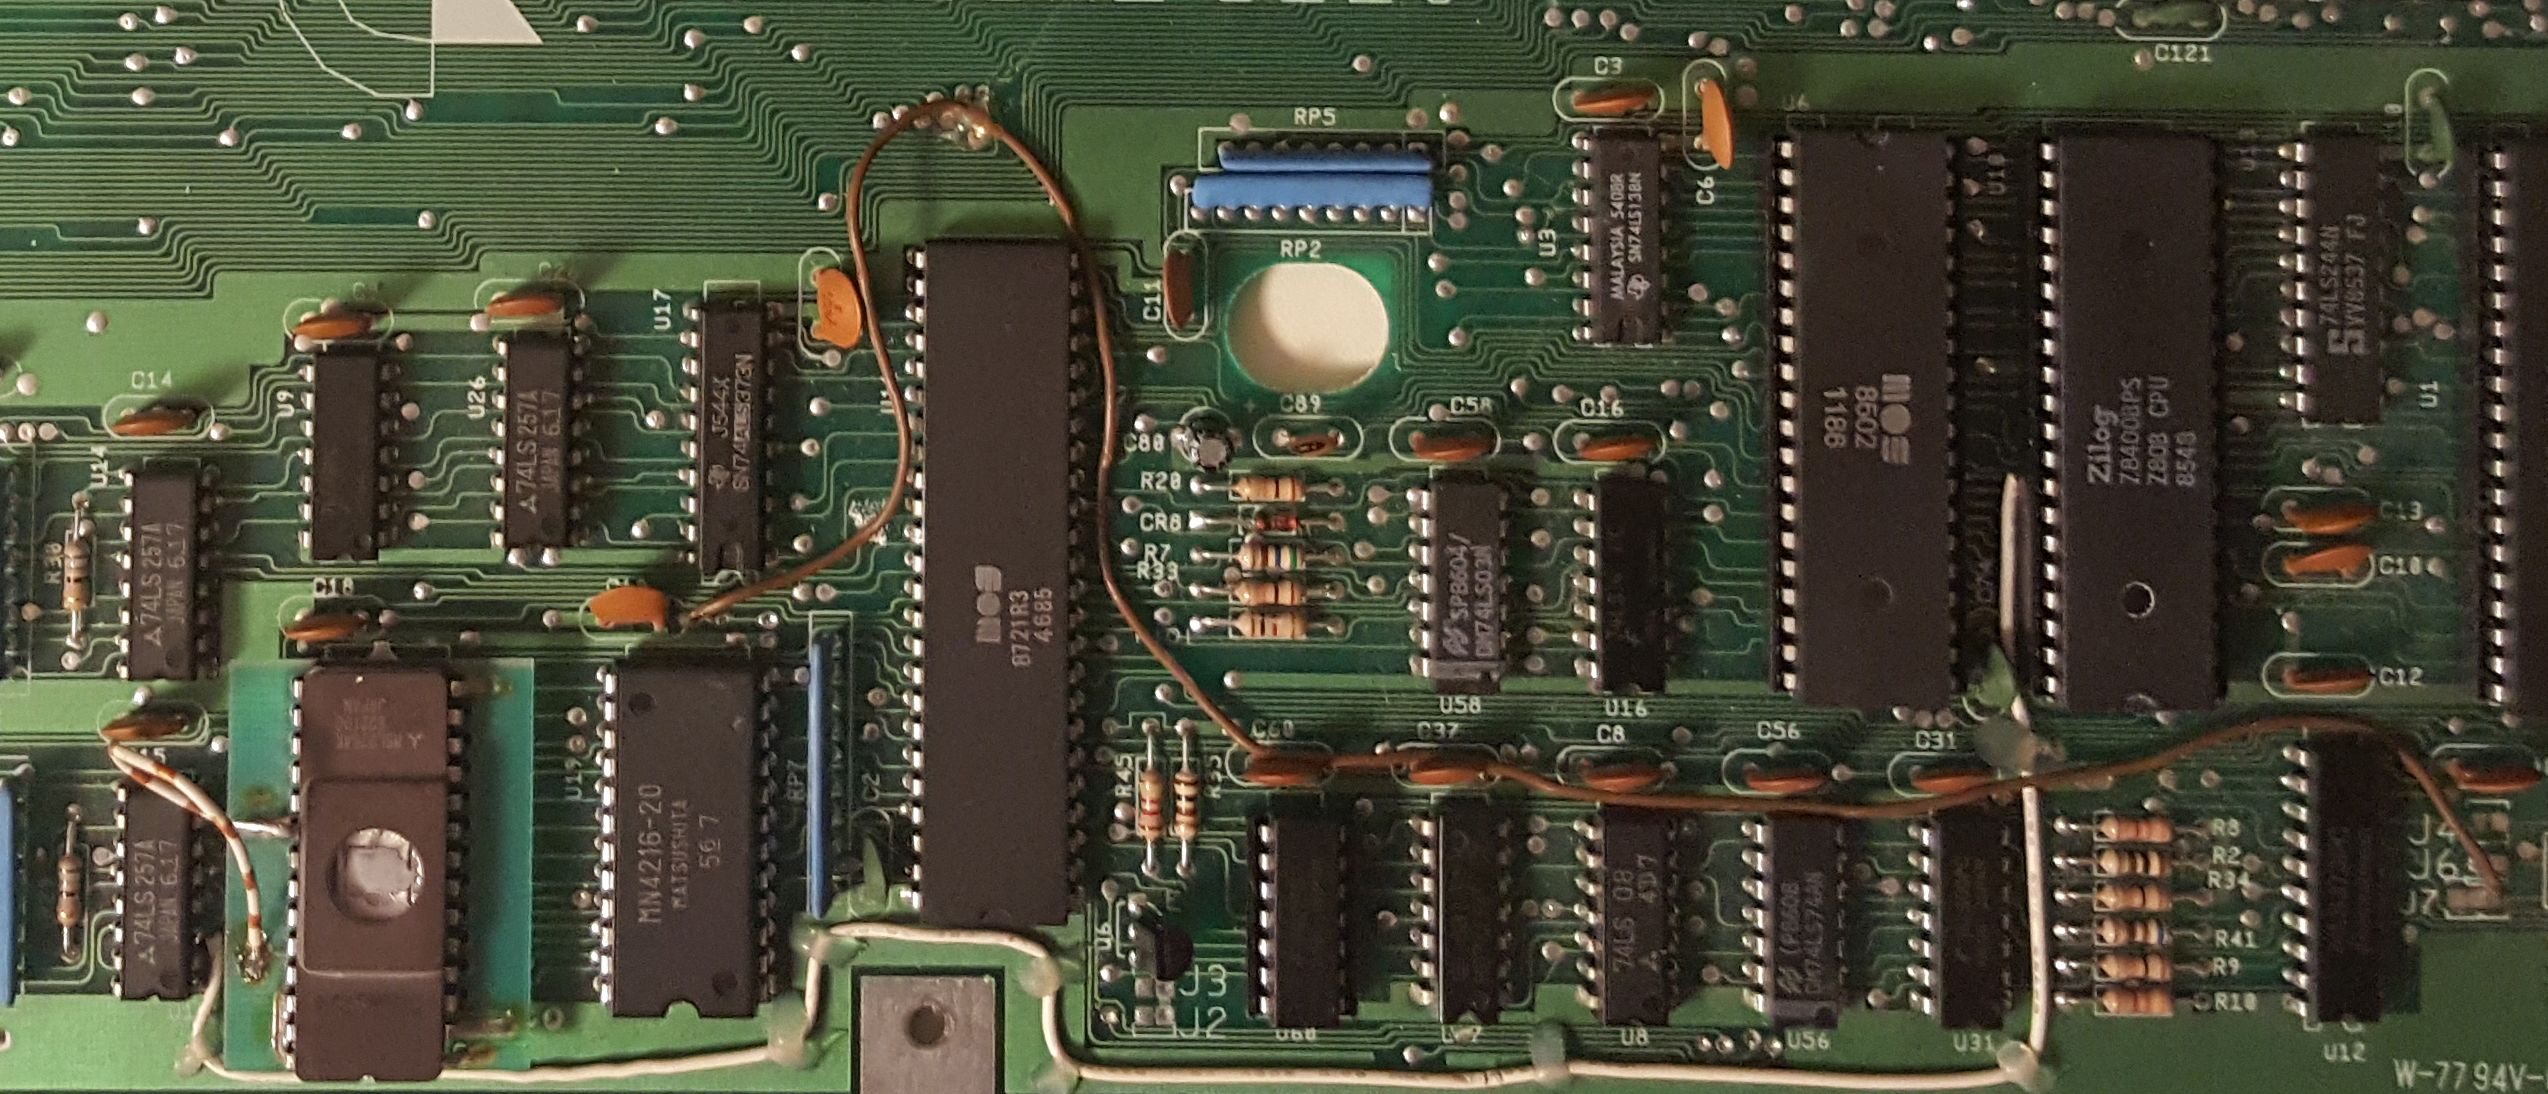 Original C128 rev 9 board